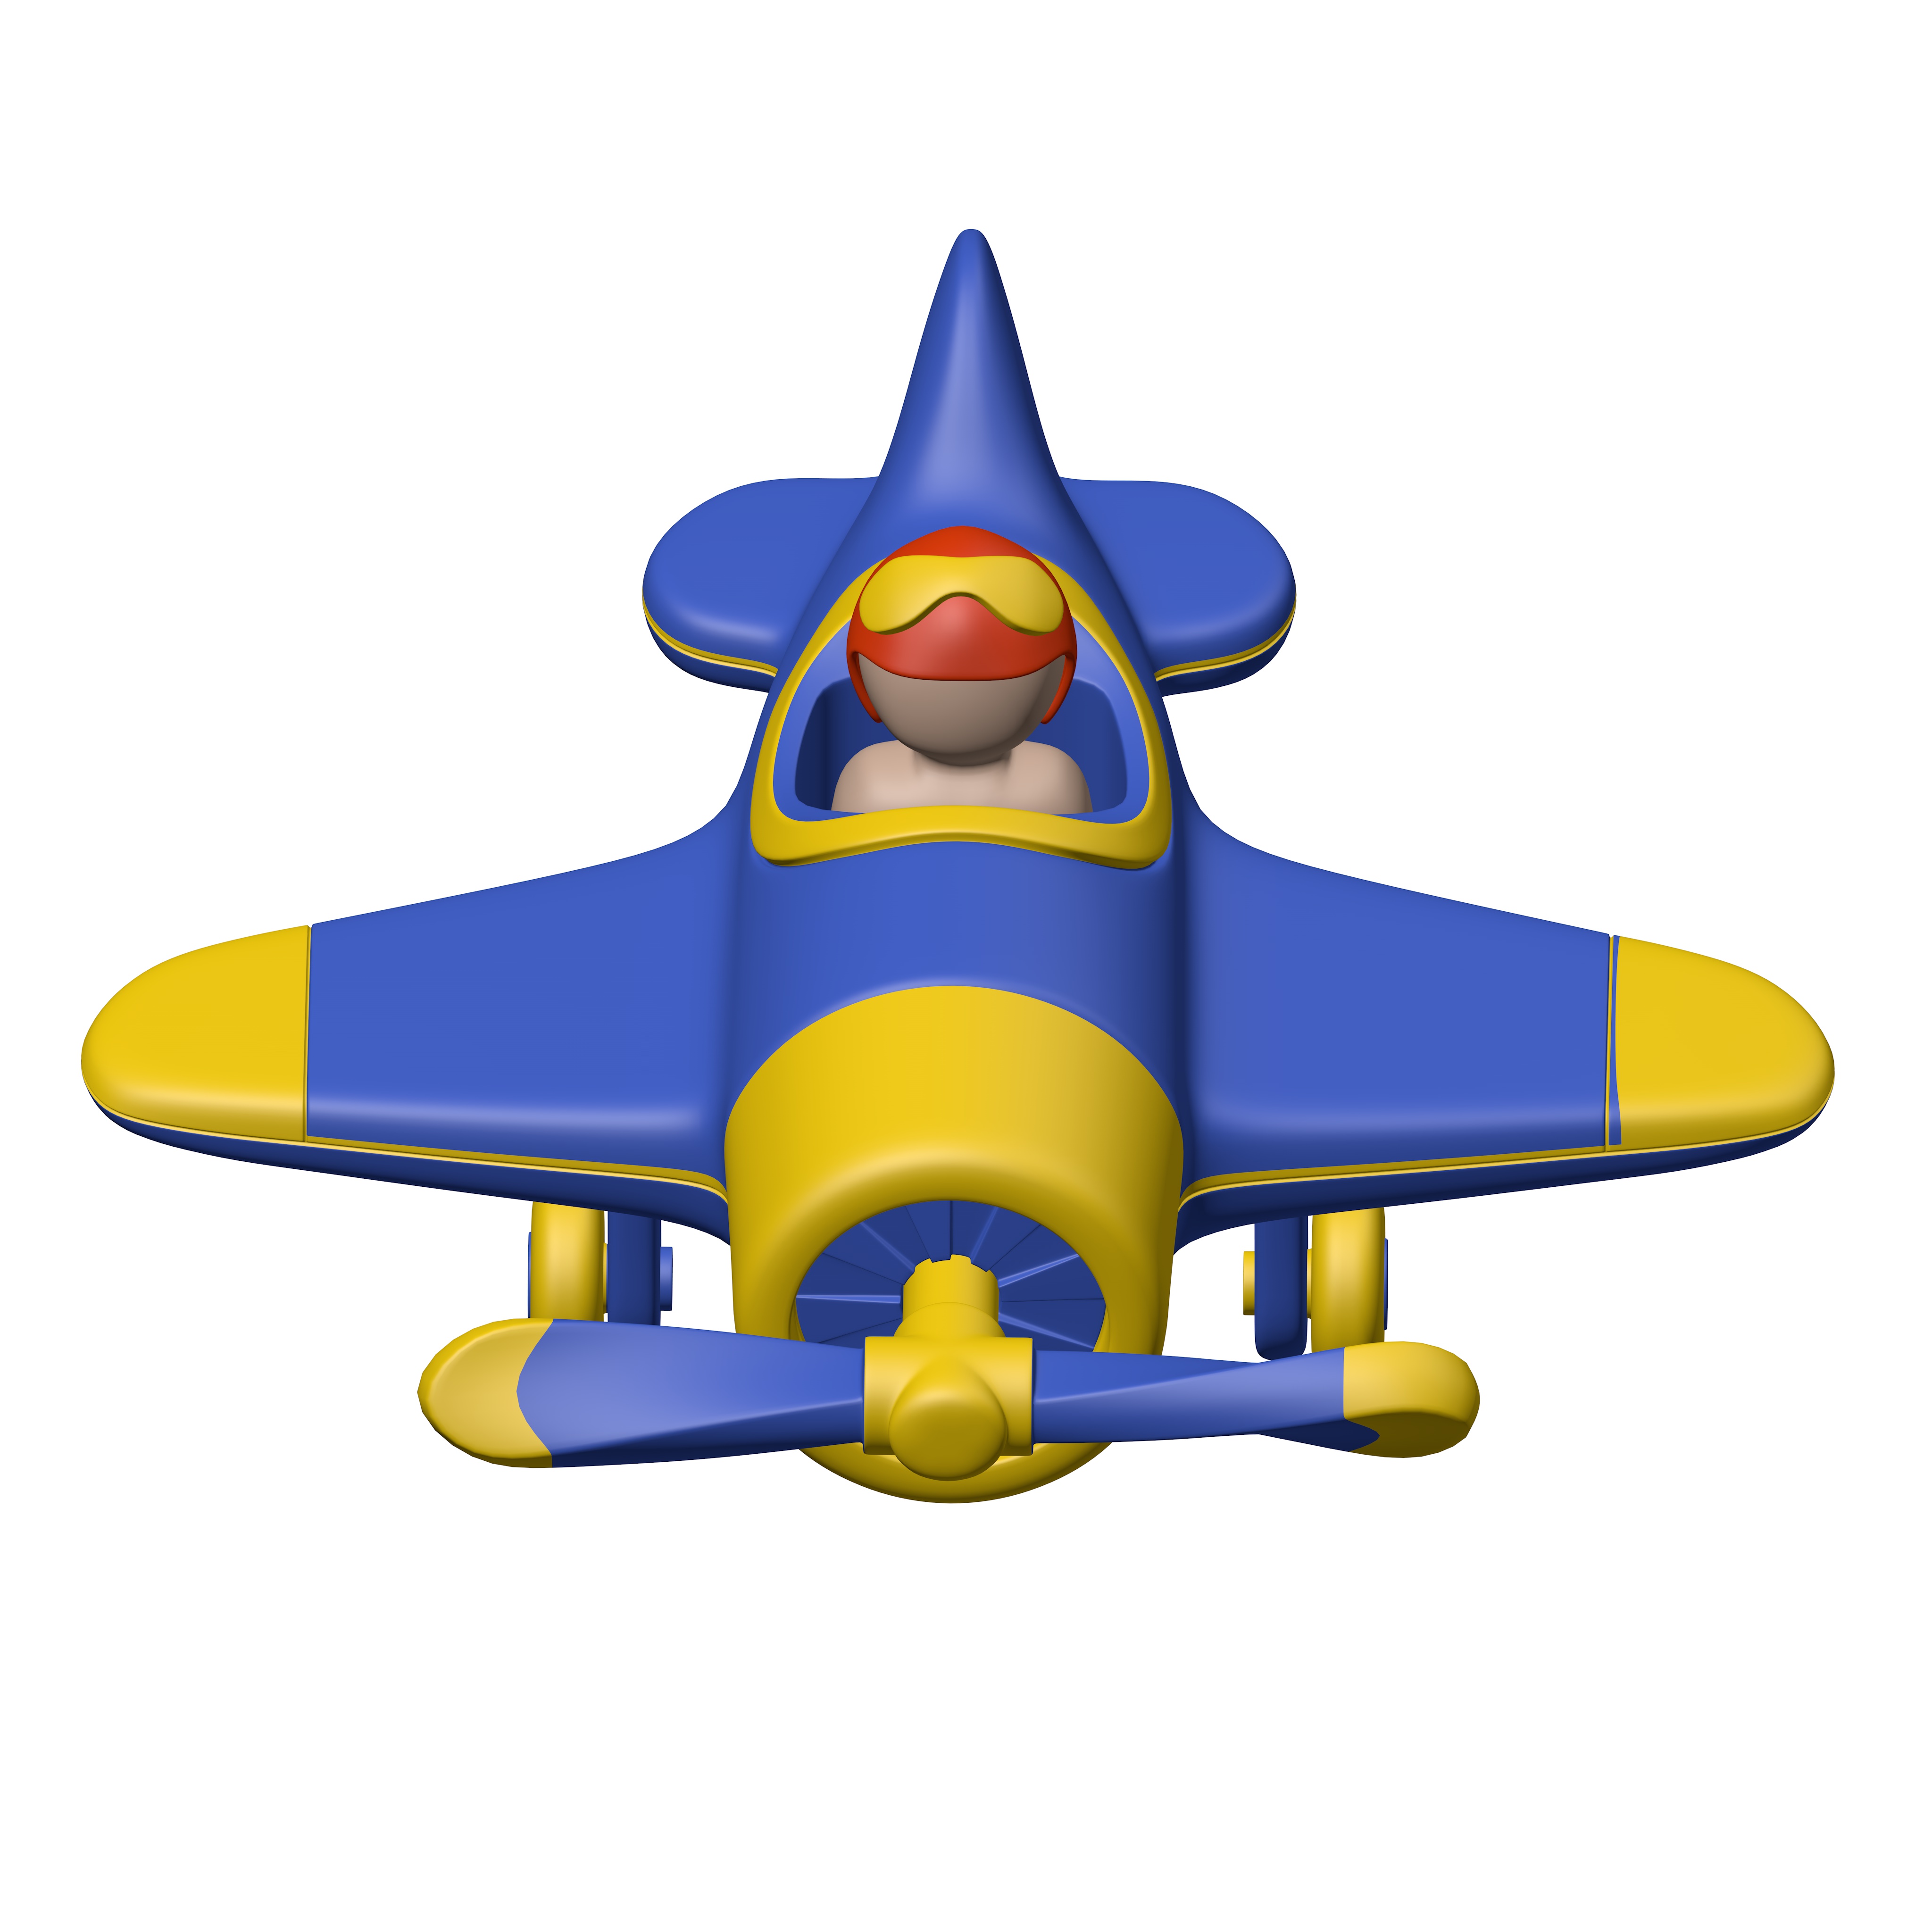 Cartoon Plane with Pilot sẽ mang lại cho bạn cảm giác trẻ trung và vui nhộn với hình ảnh chiếc máy bay dễ thương và ngộ nghĩnh cùng phi công đáng yêu. Hãy cùng nhìn thấy thế giới từ trên cao với chiếc máy bay này nhé!